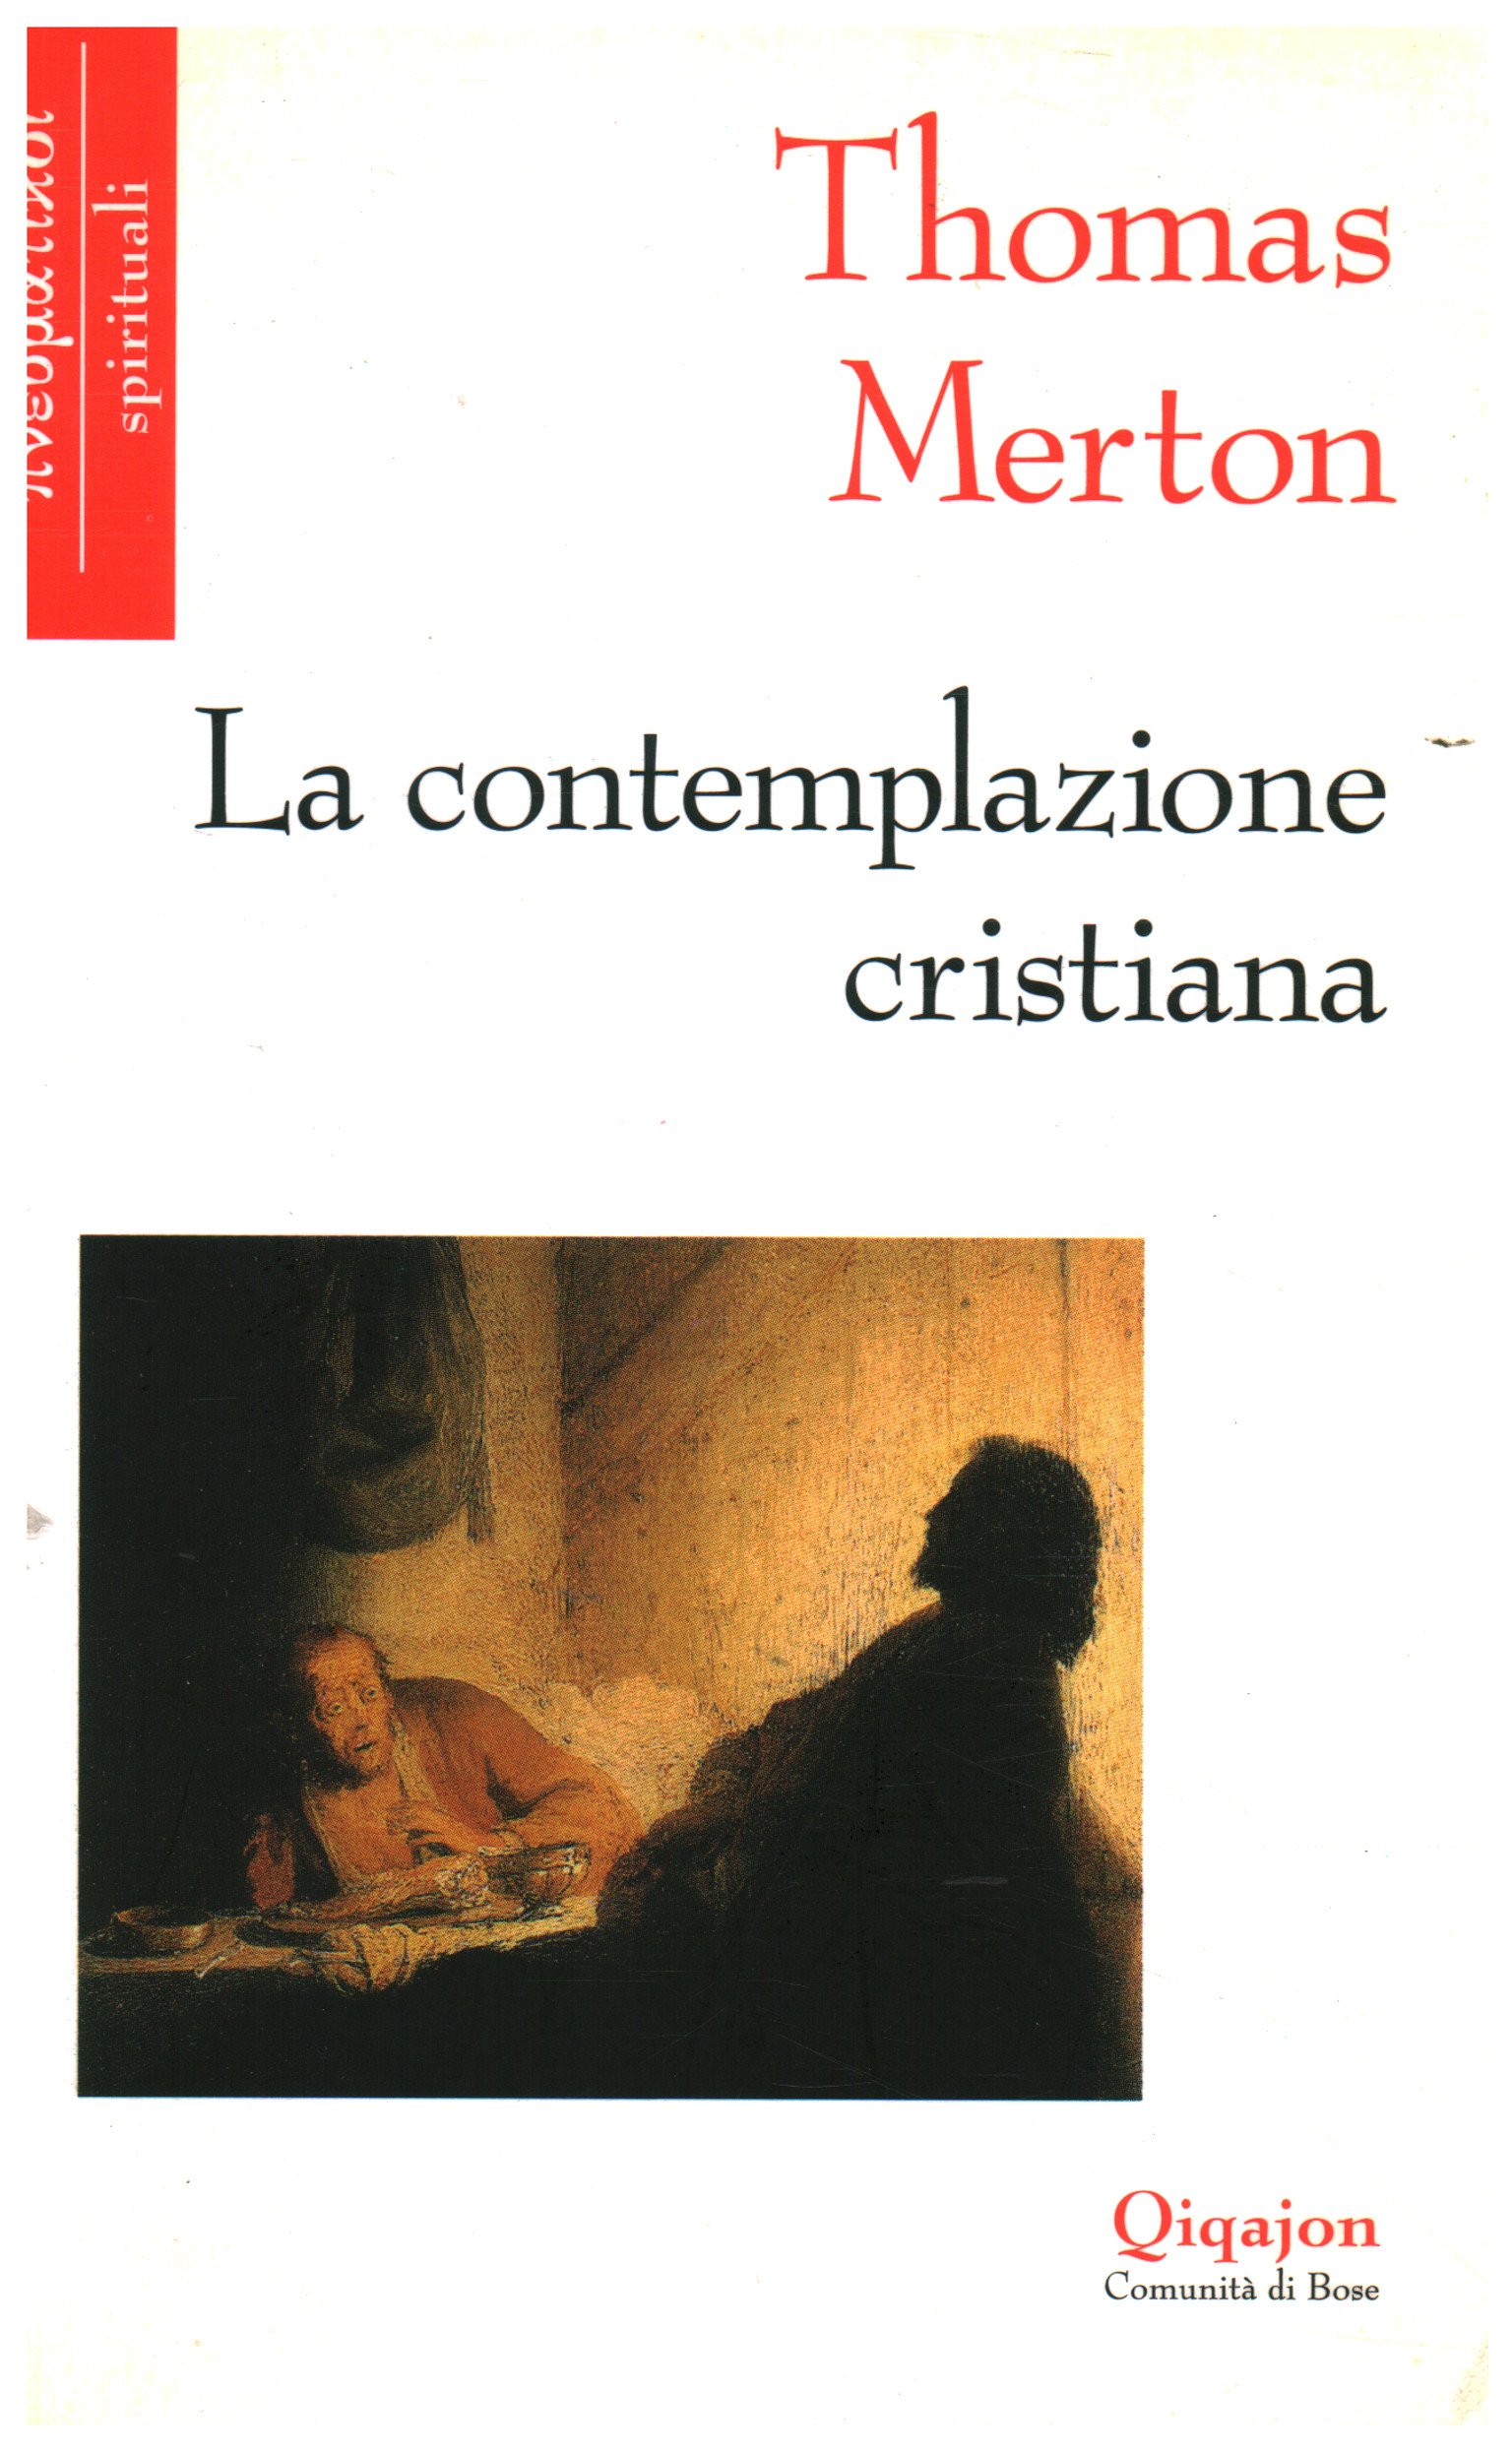 Contemplación cristiana, Thomas Merton